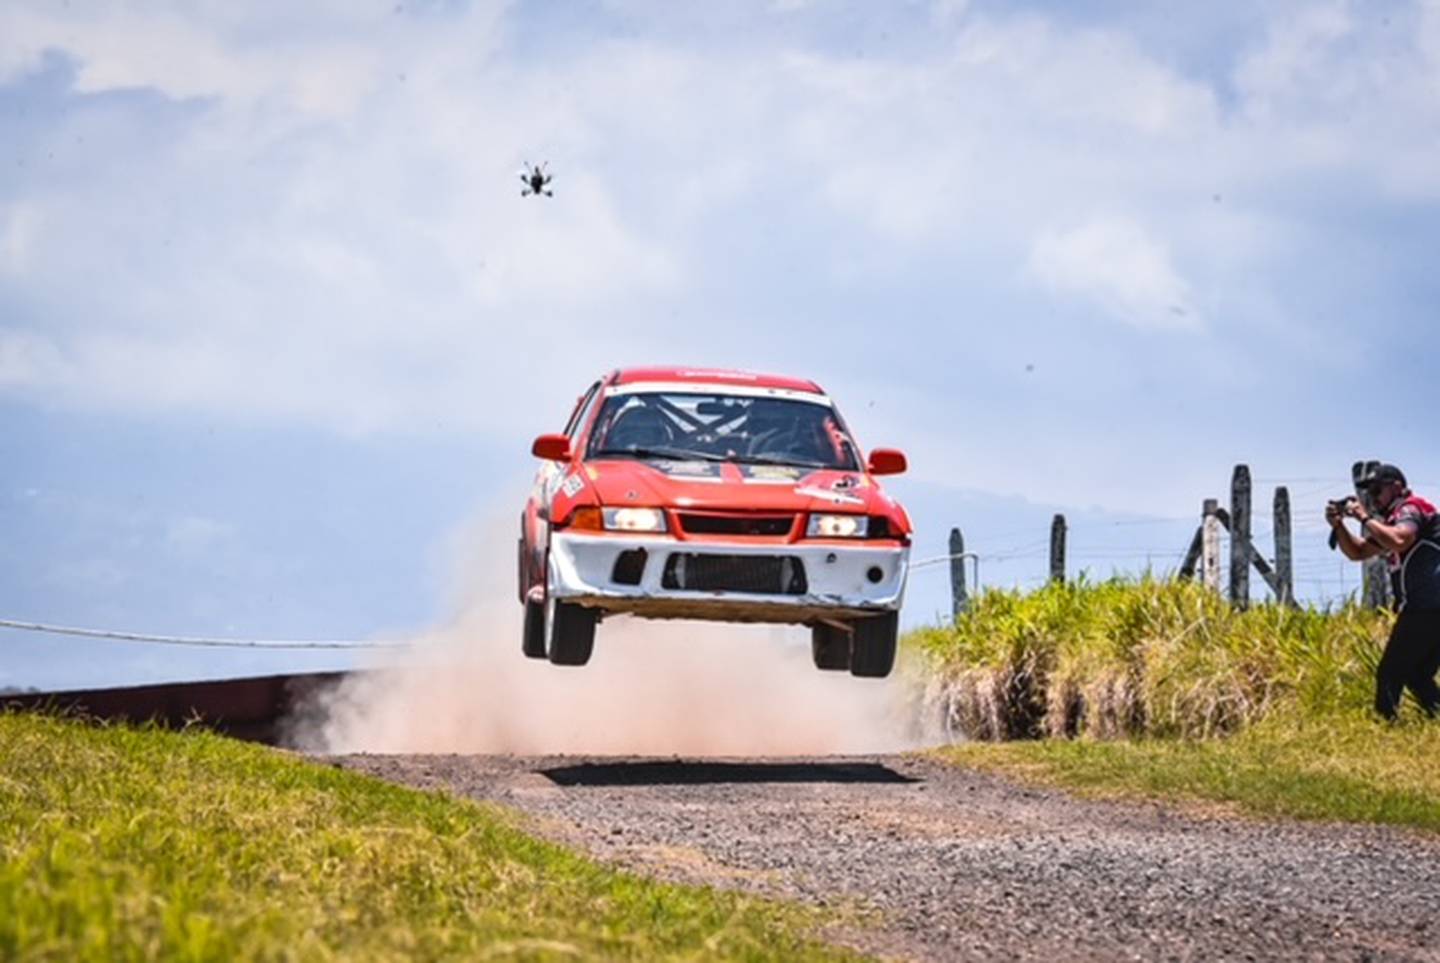 Este domingo será la 2da fecha del Campeonato Nacional de Rally 2021 en Parque Viva